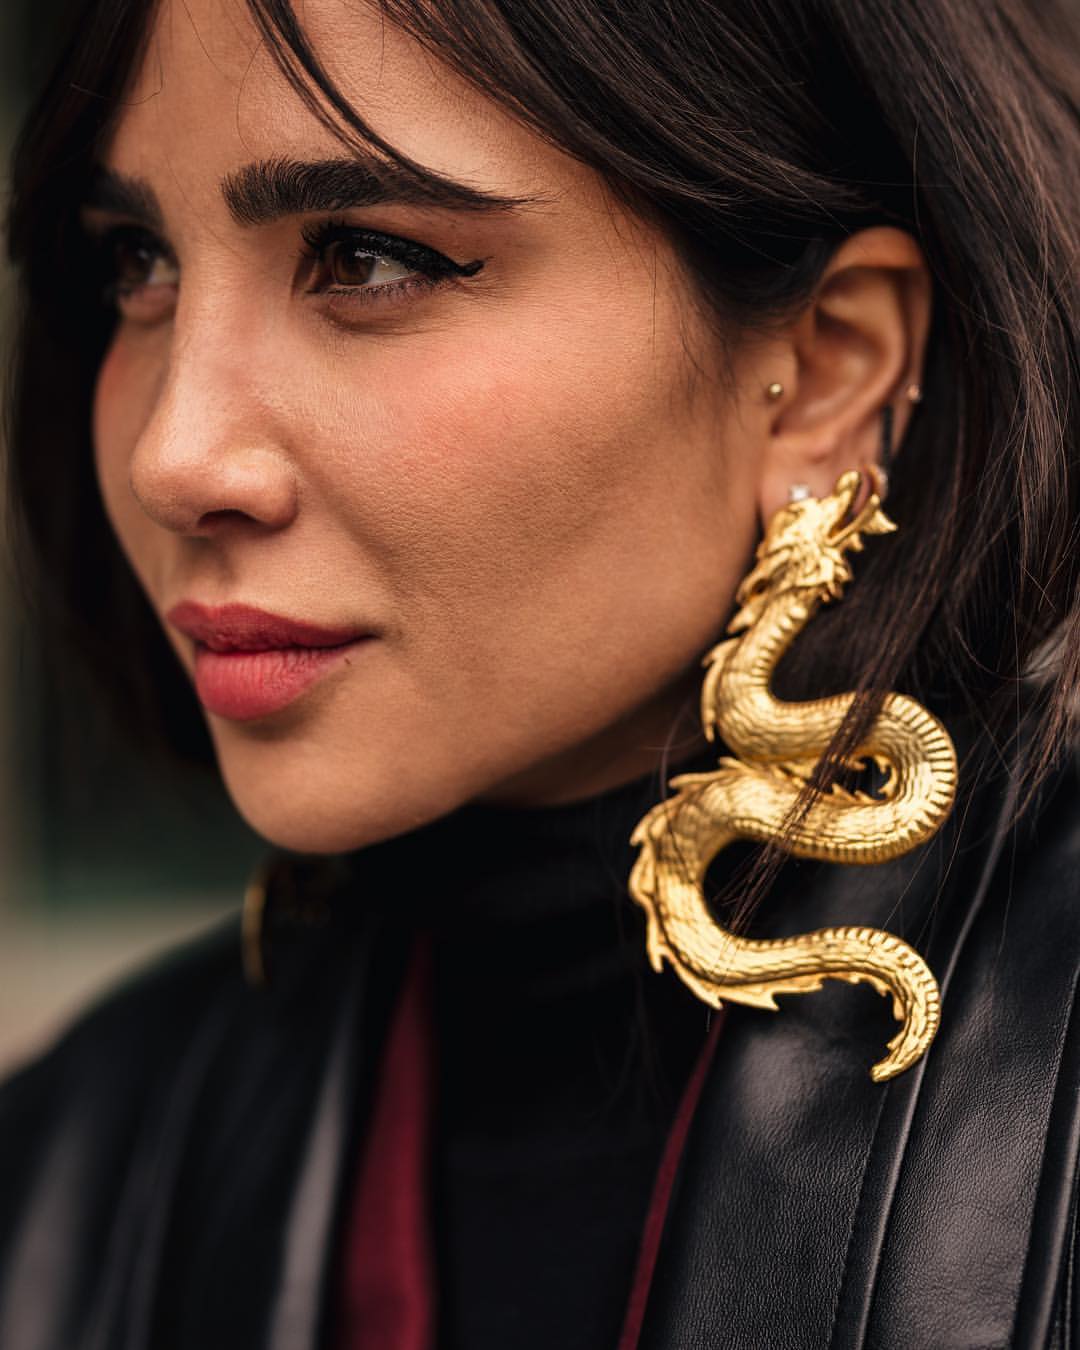 Statement earrings: Τα κοσμήματα που ορίζουν το στυλ σου